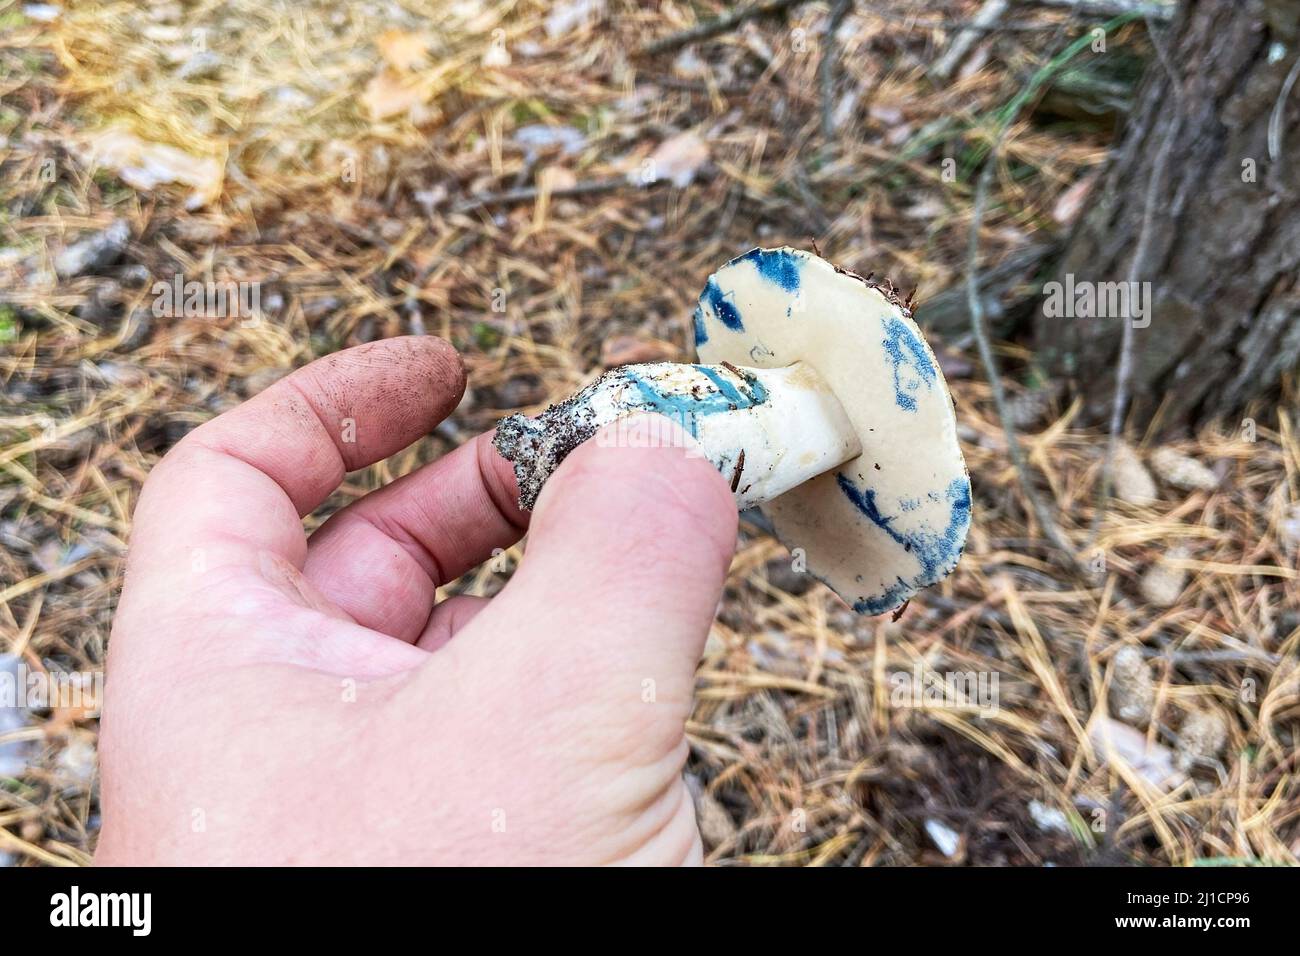 Gyroporus cyanescens. Saison der Pilze im Wald. Männliche Hand hält die frischen, leckeren Pilze. Natur des Herbstwaldes. Stockfoto